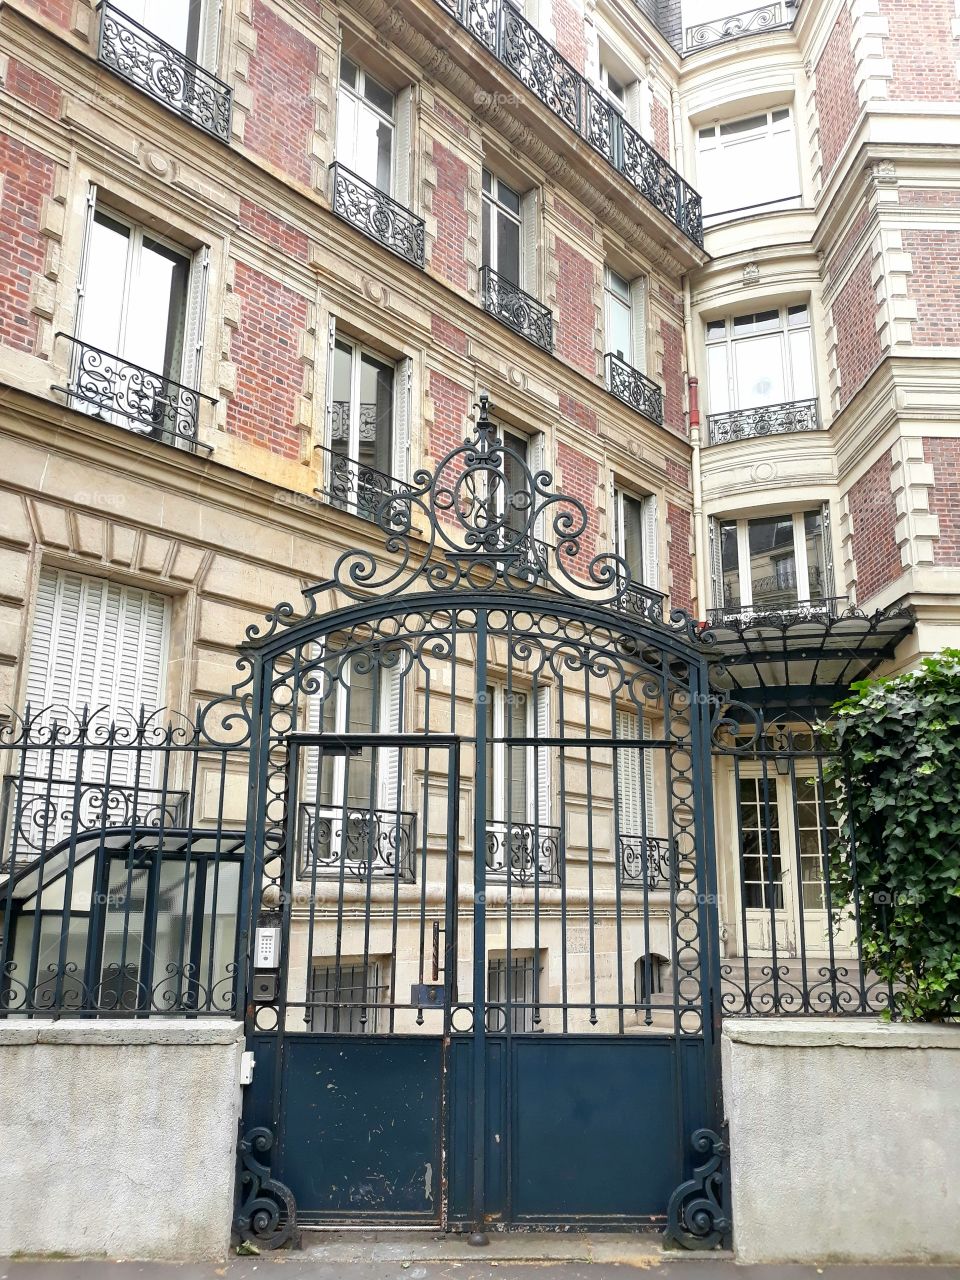 Building in Paris.